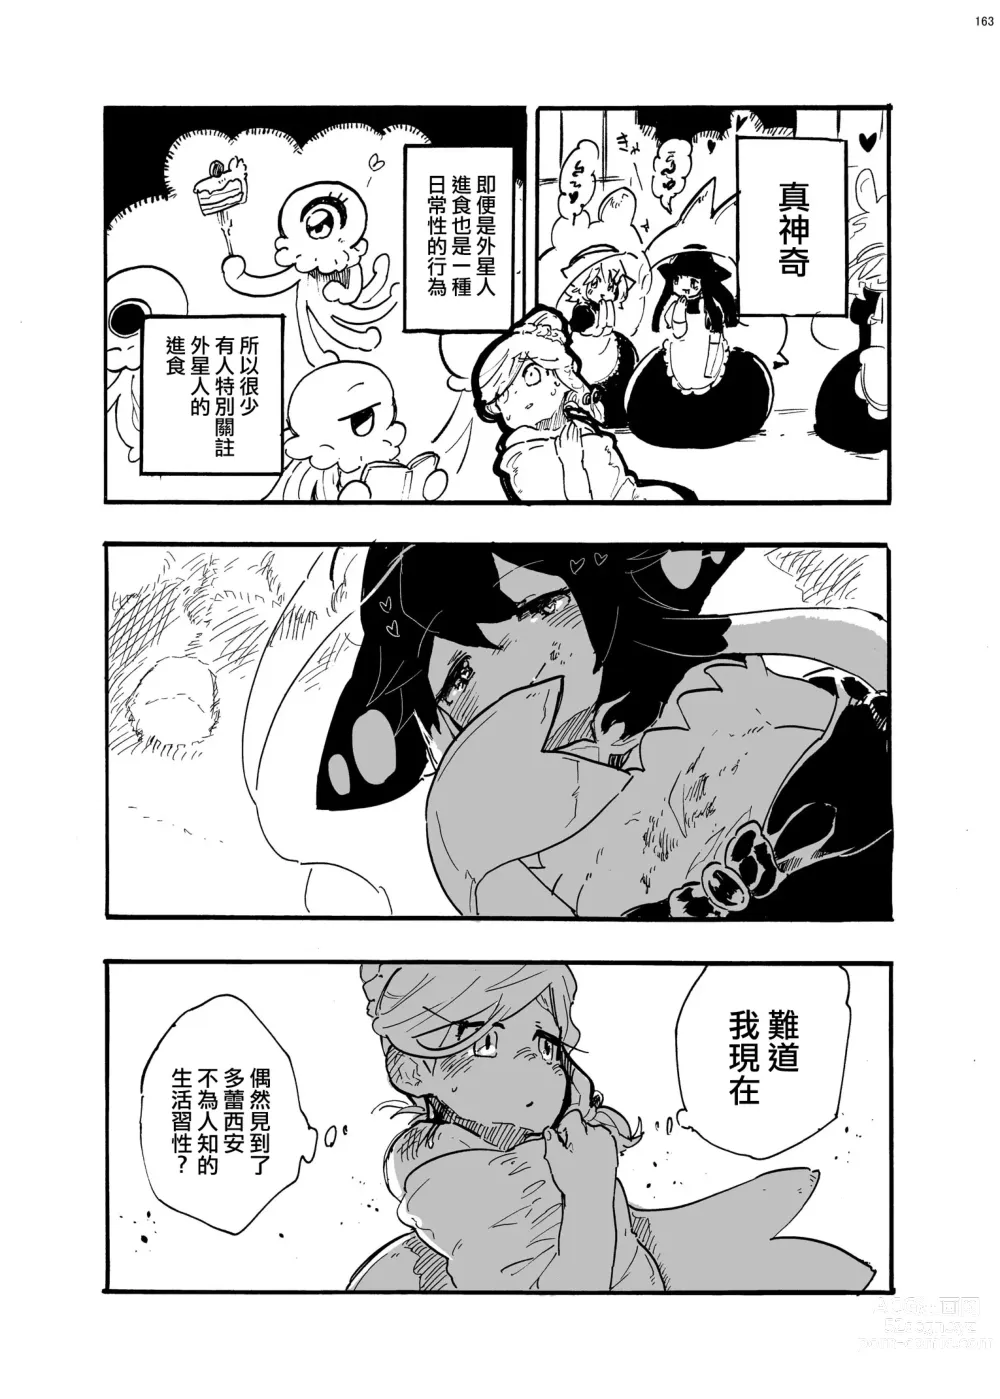 Page 6 of manga 外星人D和研究員U的遭遇